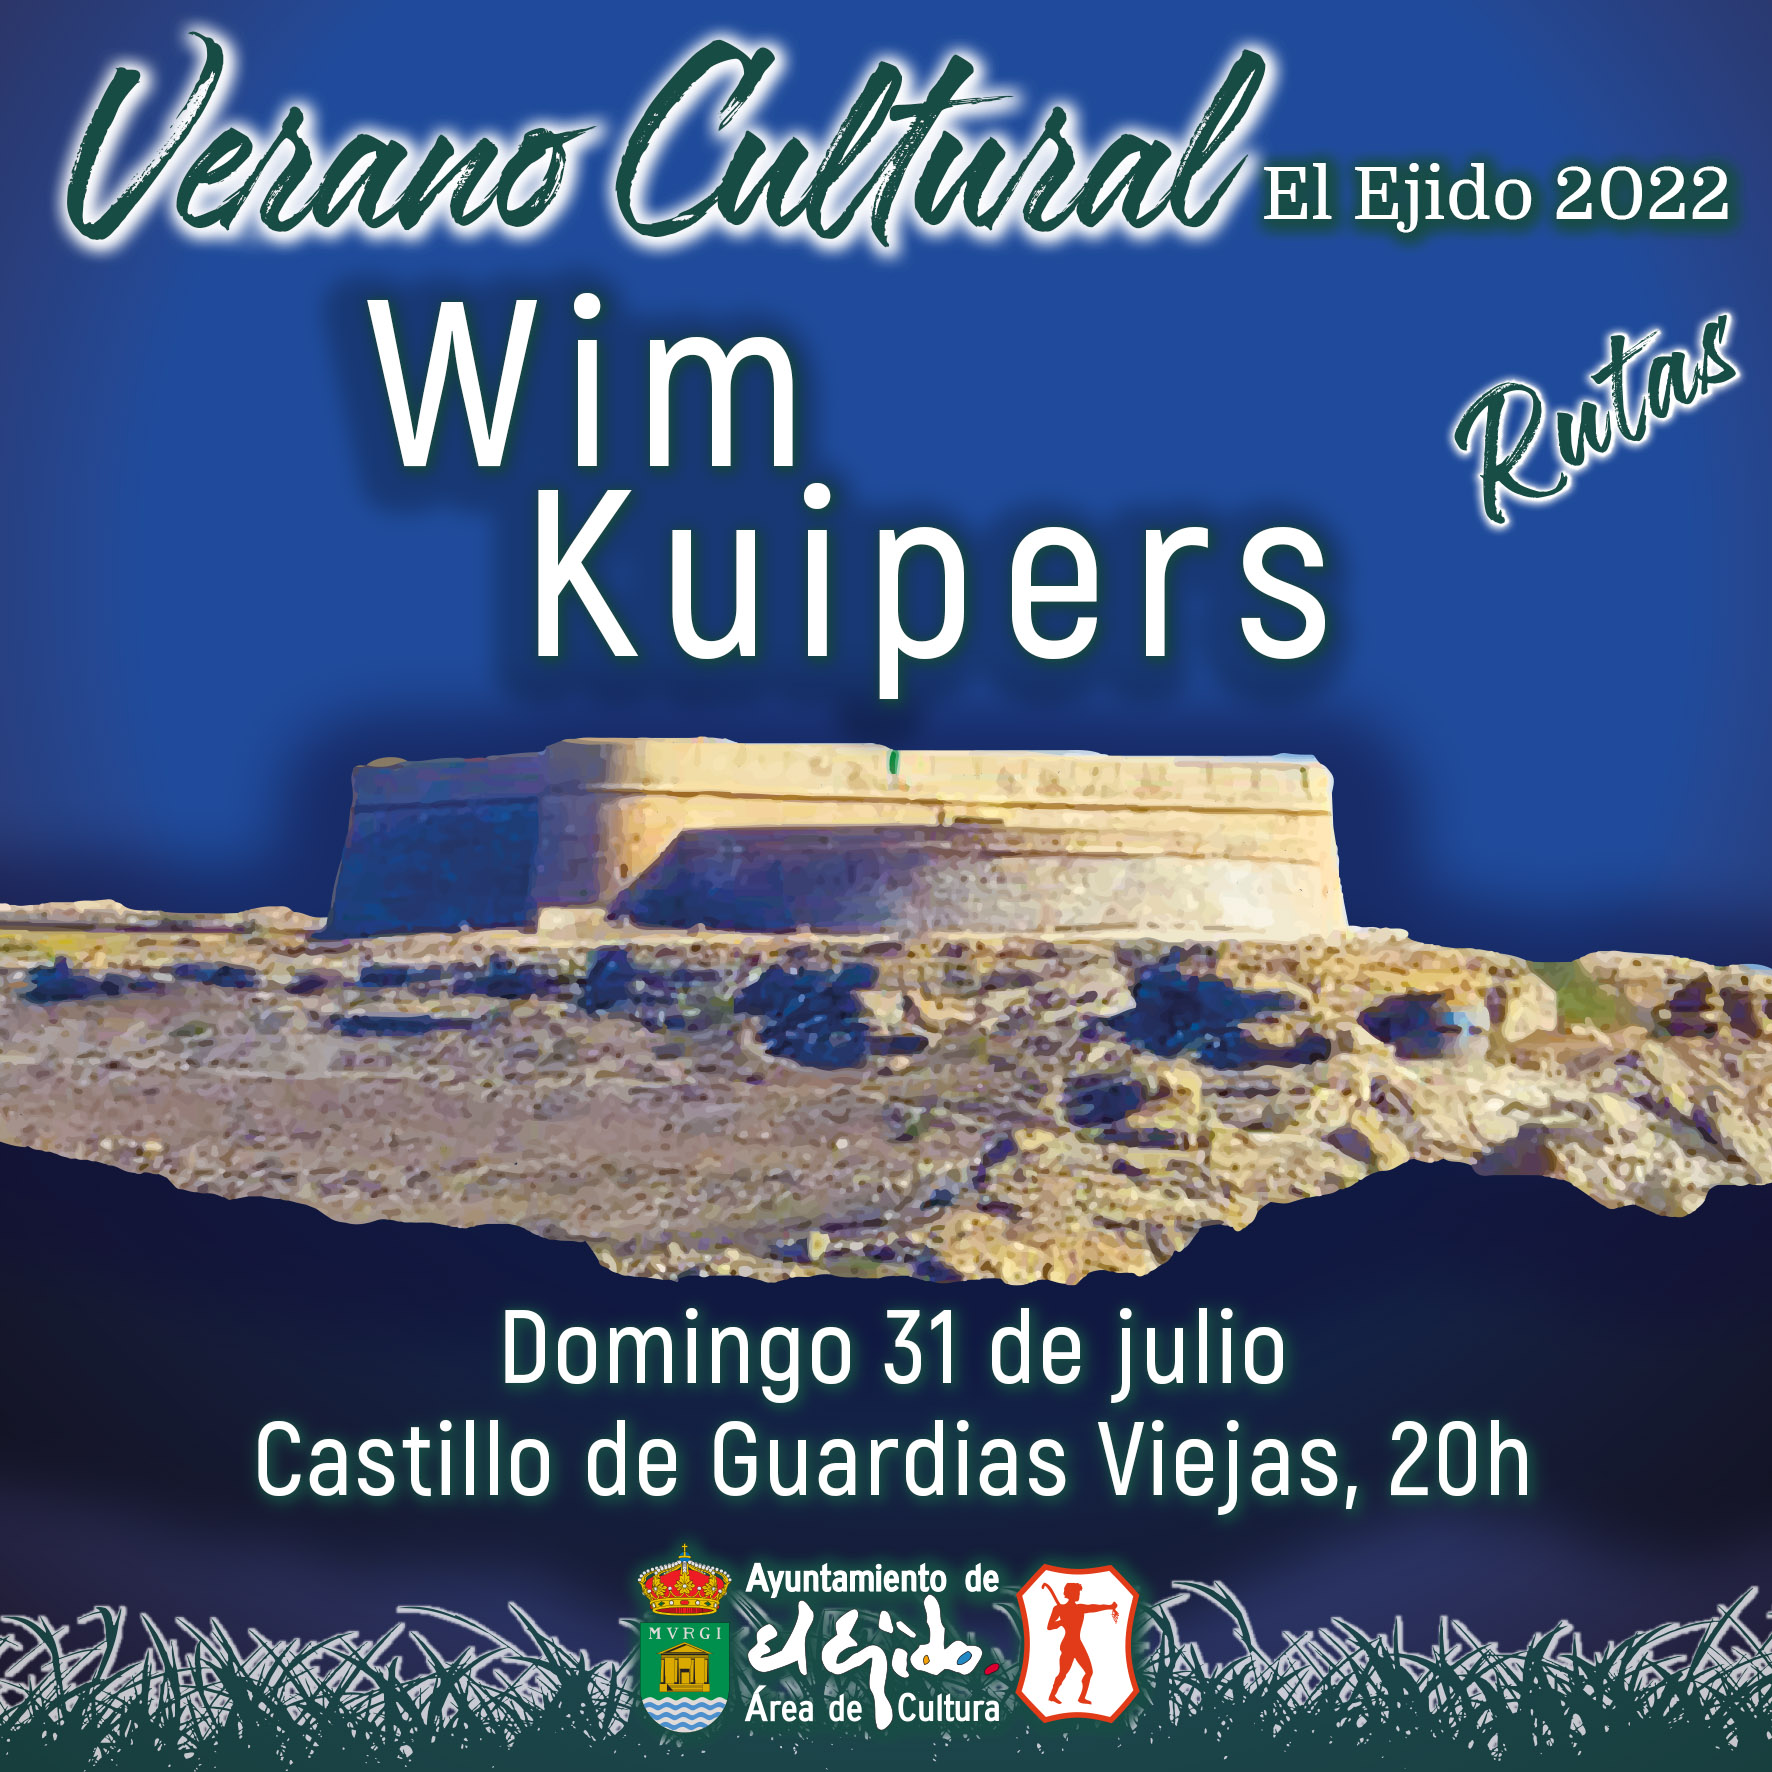 Verano Cultural 2022 de El Ejido – Rutas – Wim Kuipers – Domingo 31 de julio